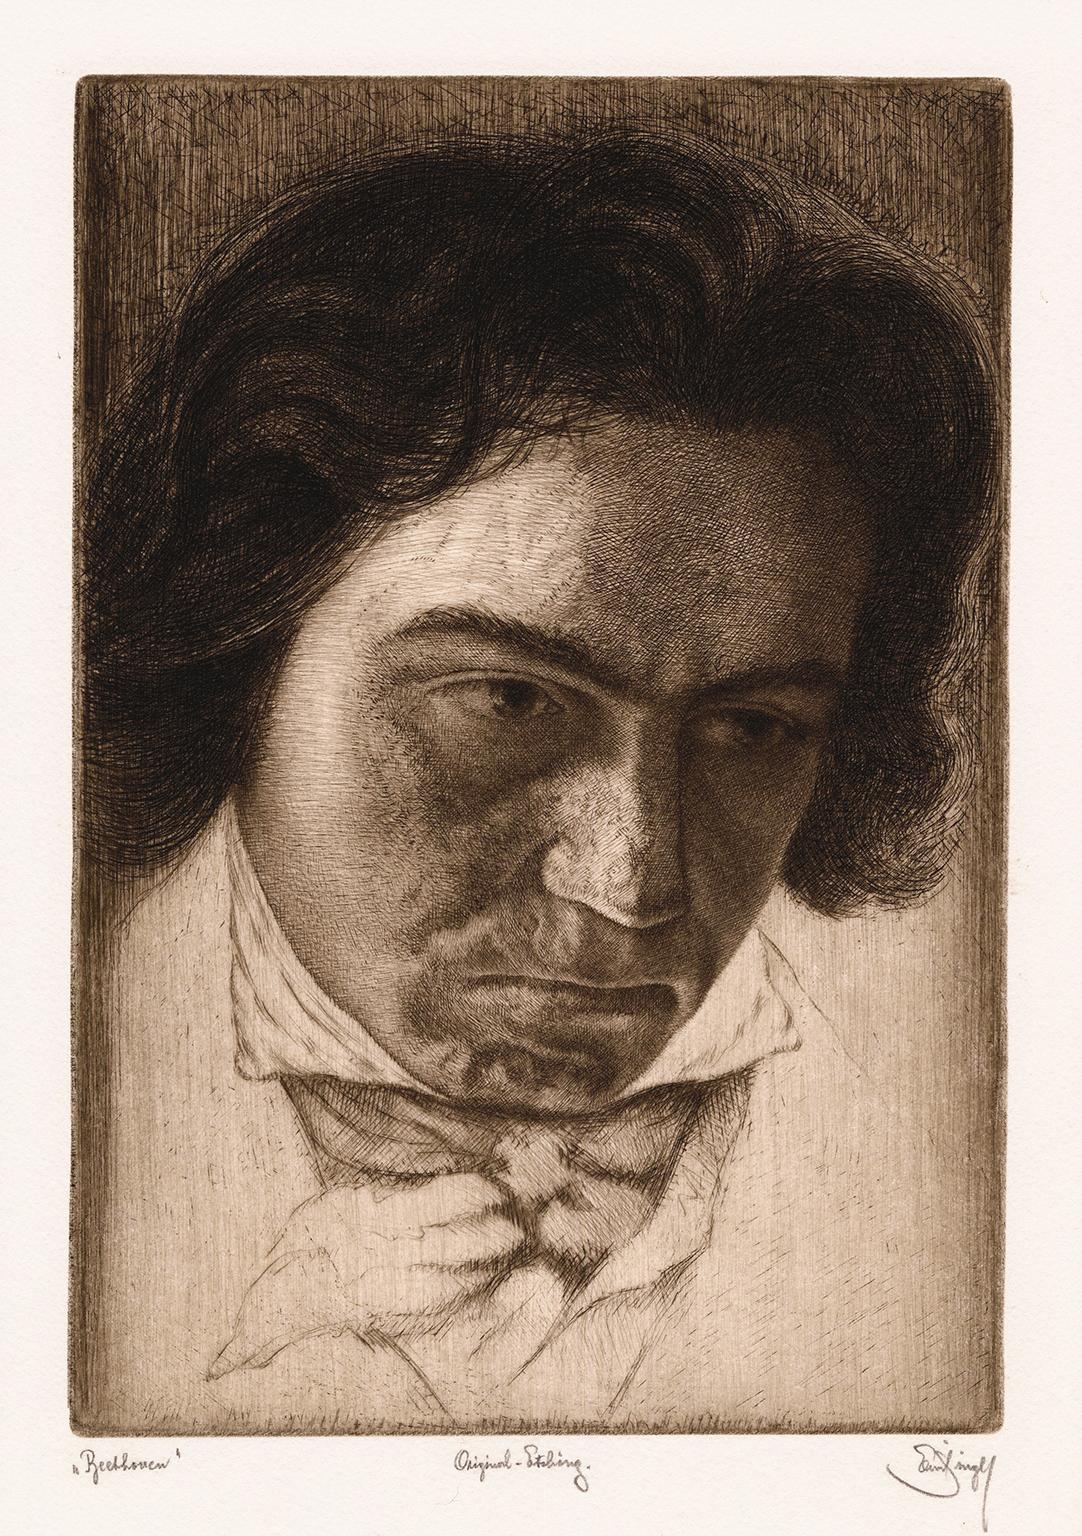 Emil Singer Portrait Print - 'Beethoven' - c 1920 etching portrait